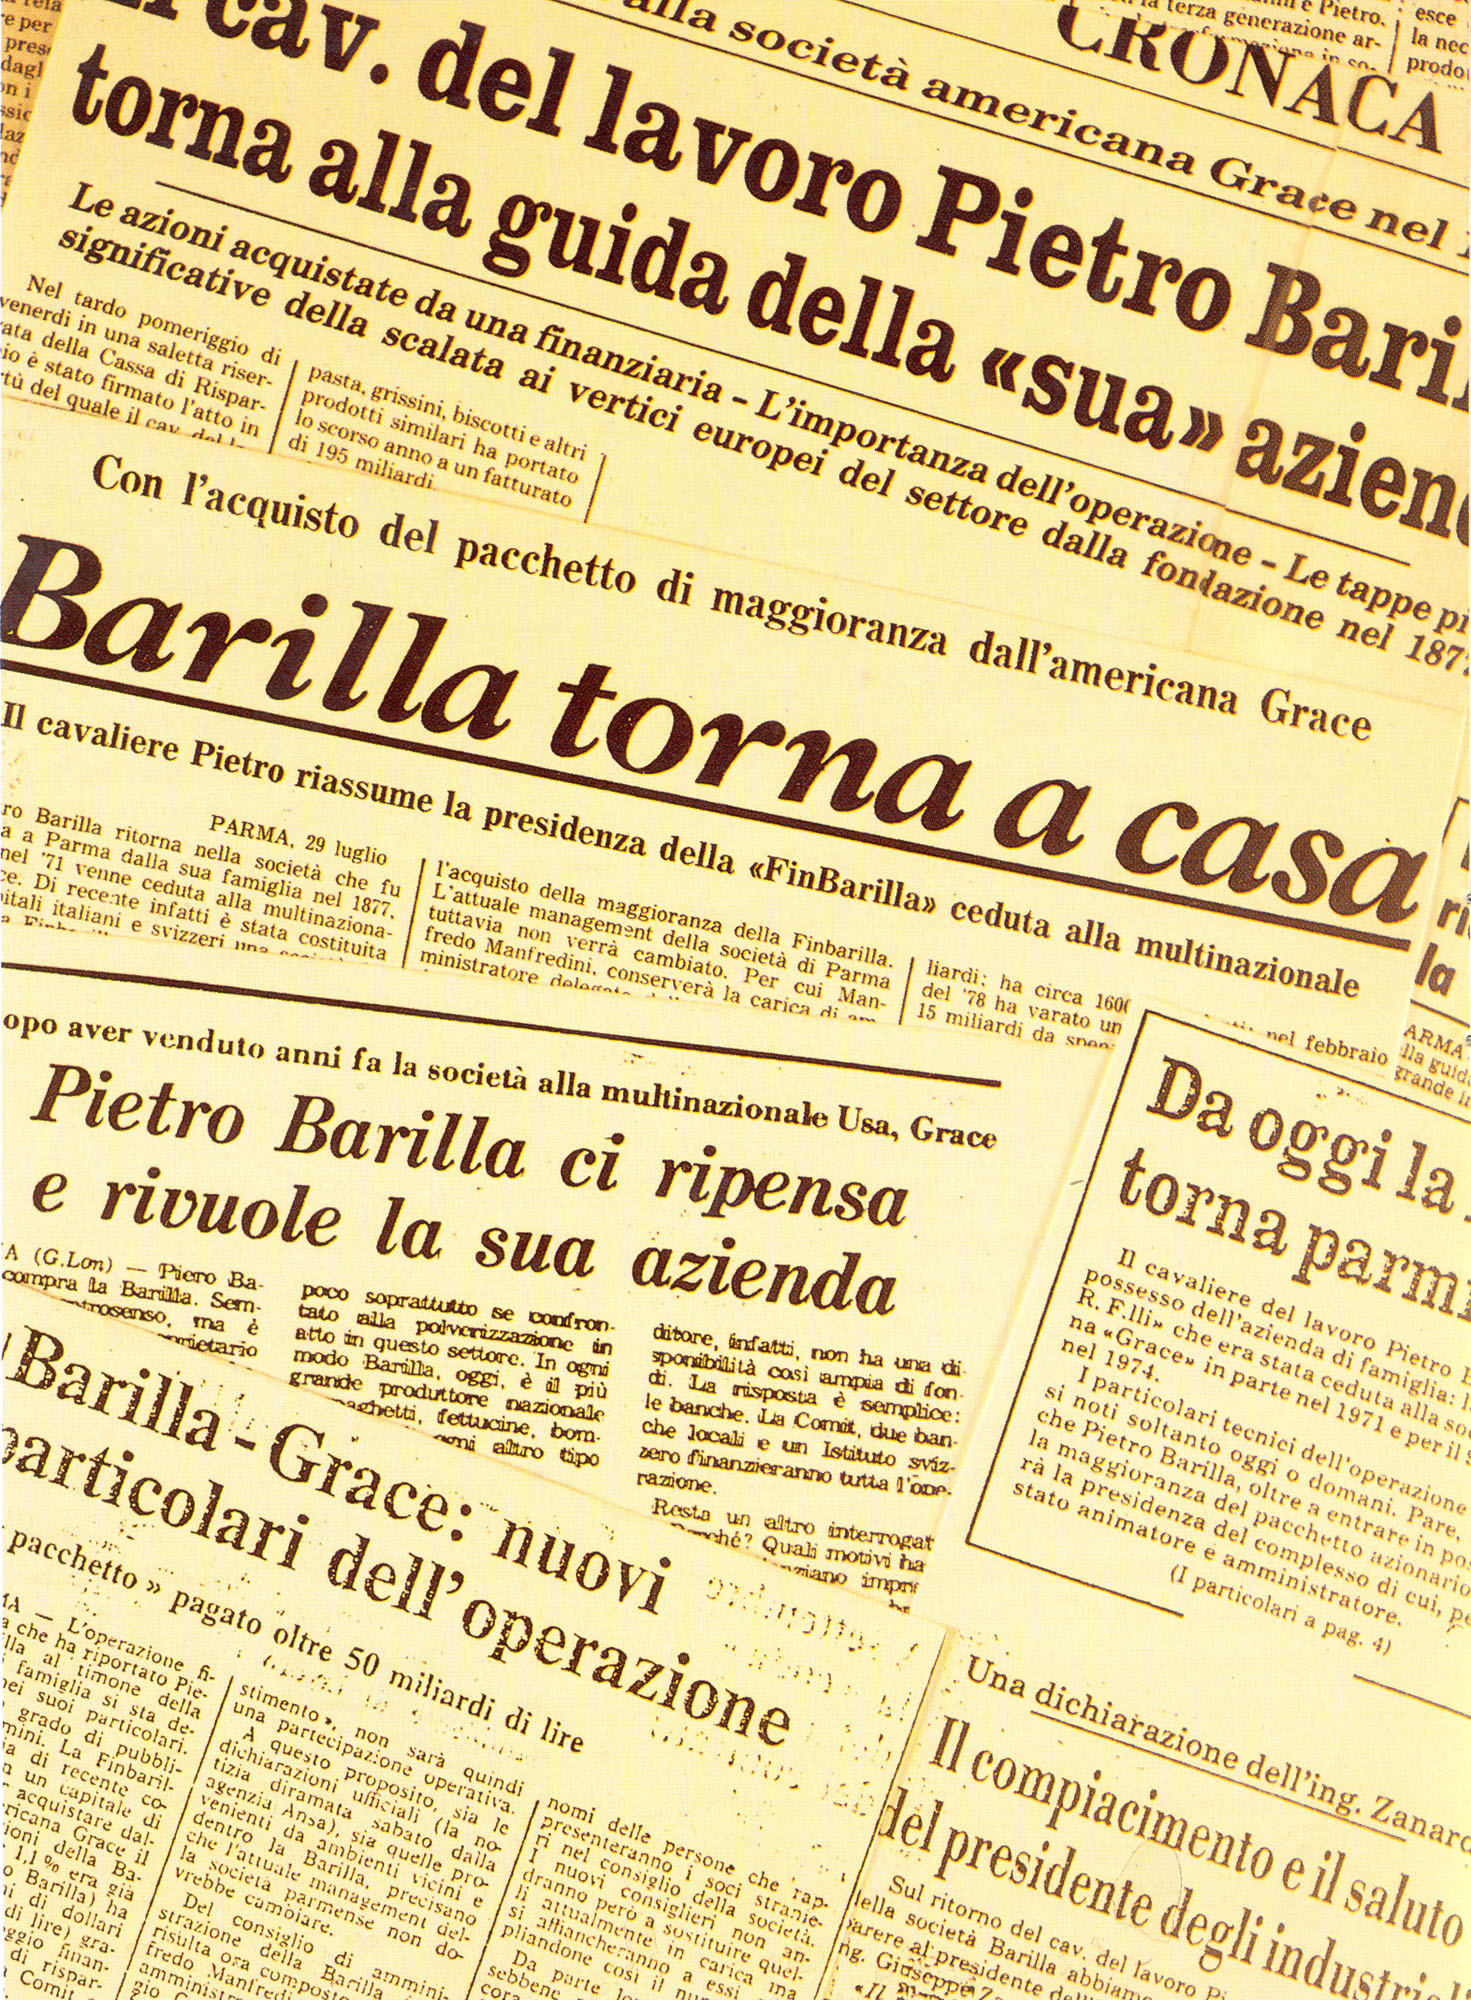 1979 - Pietro Barilla riacquista l'azienda di famiglia